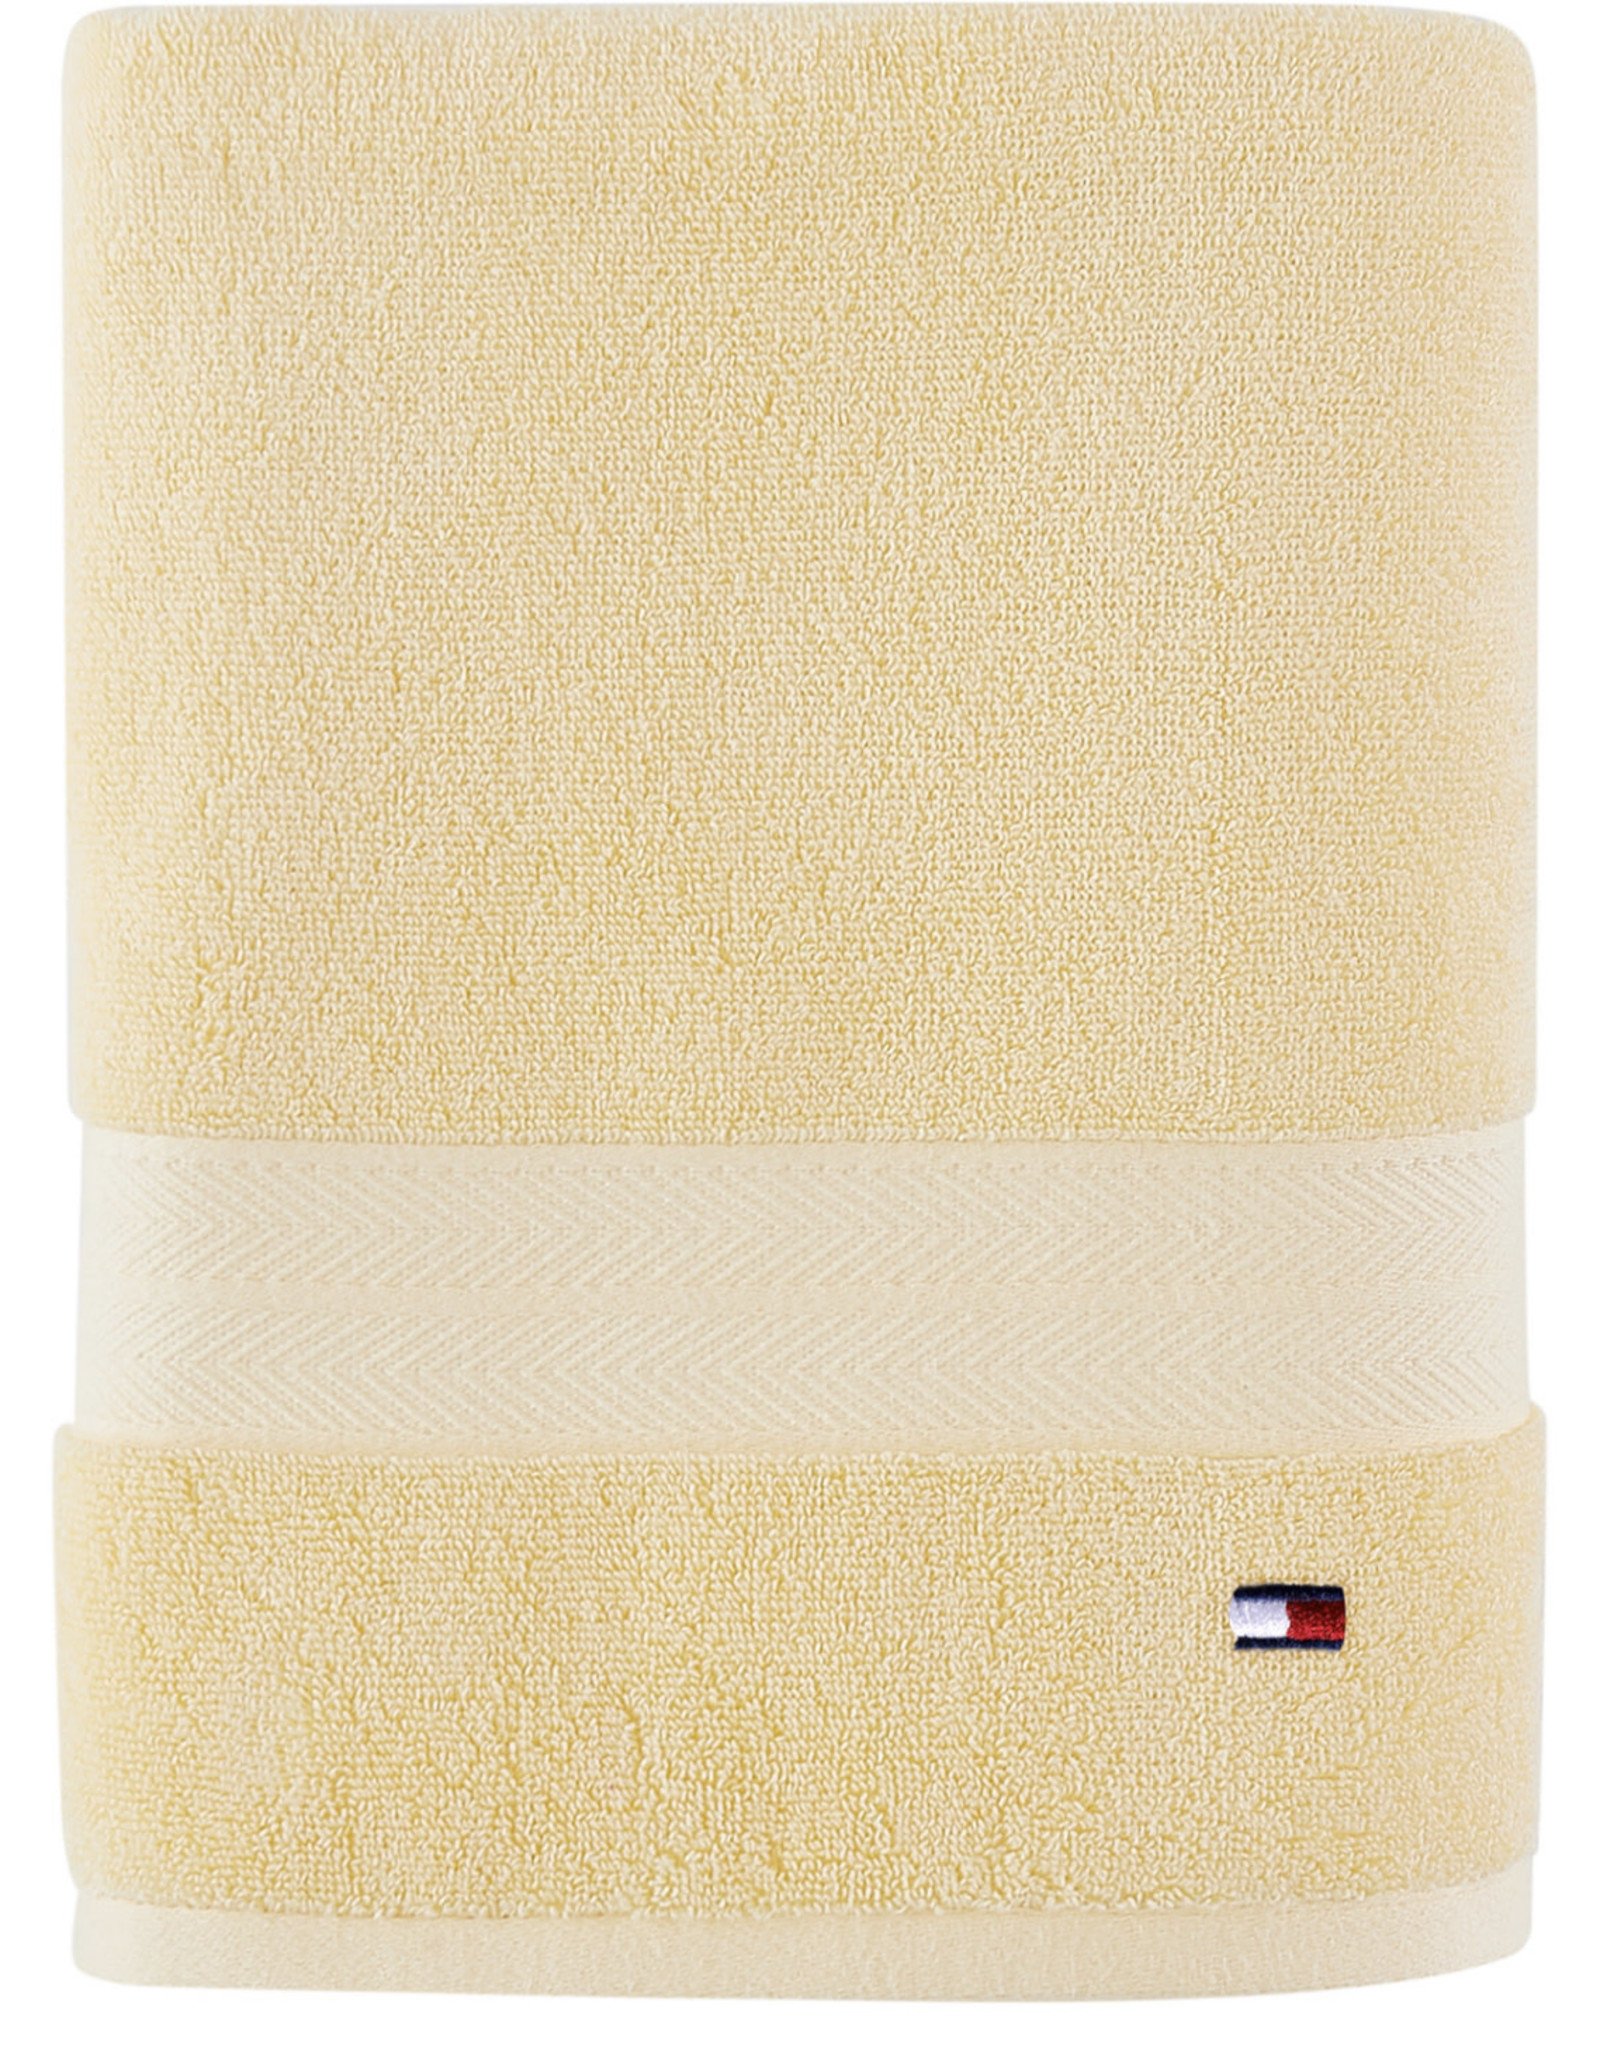 Tommy Hilfiger Tommy Hilfiger Modern American Cotton Bath Towel 30” x 54”